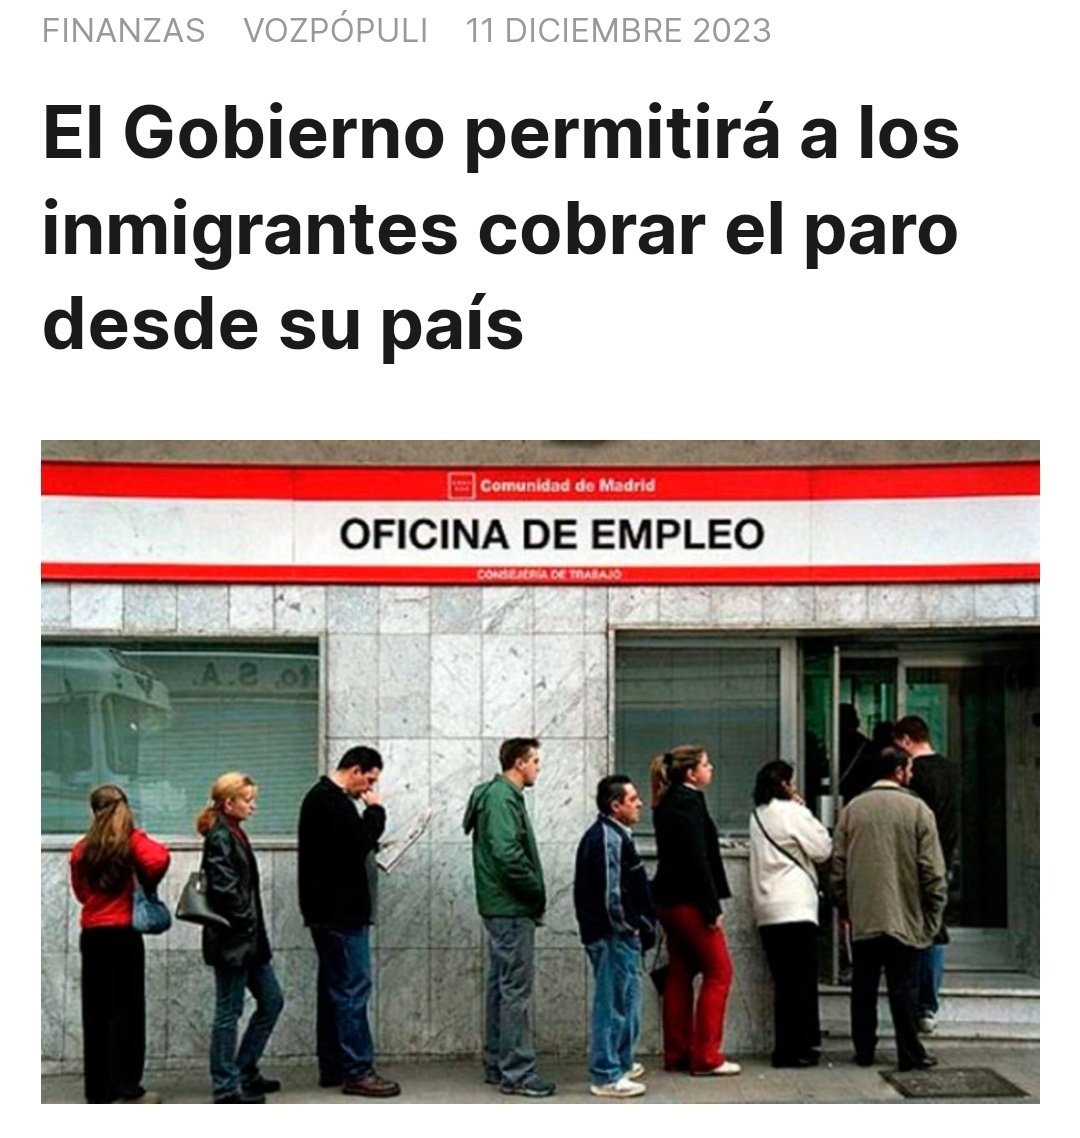 El español a trabajar, el inmigrante a cobrar.

¡Vienen a pagarnos las pensiones!